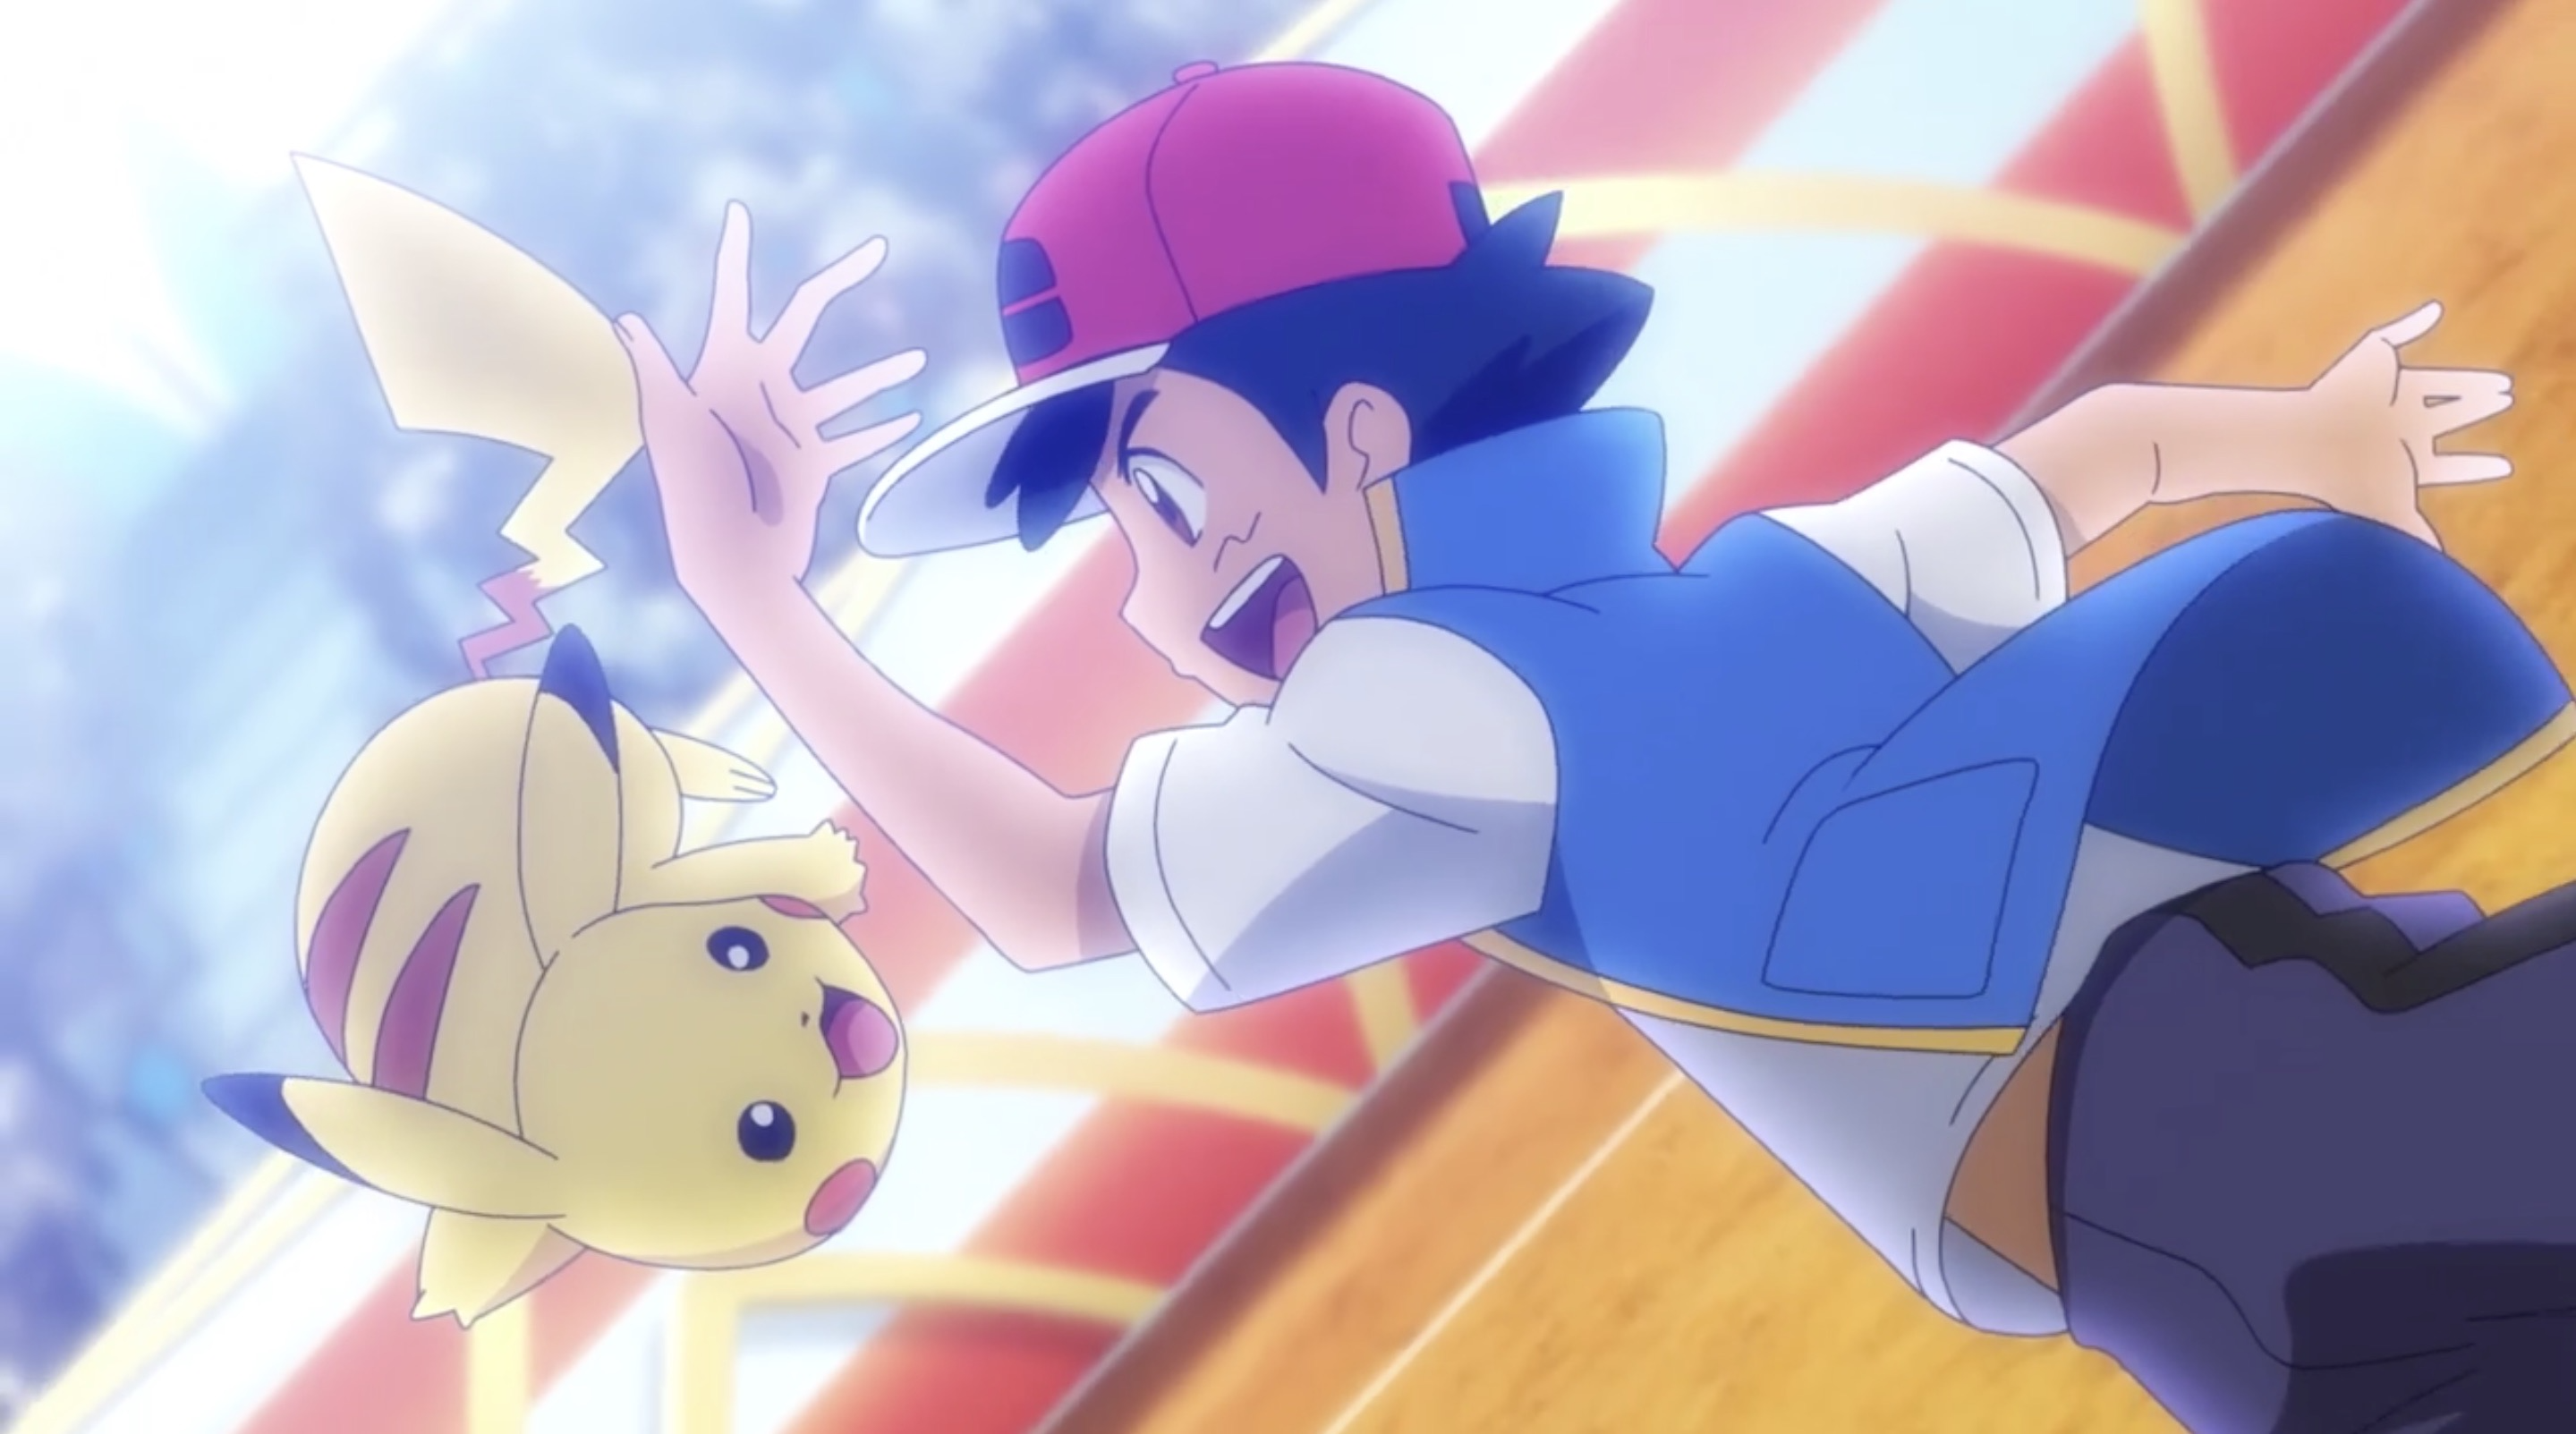 Pokemon anime exec explains why Pikachu was Ash's starter